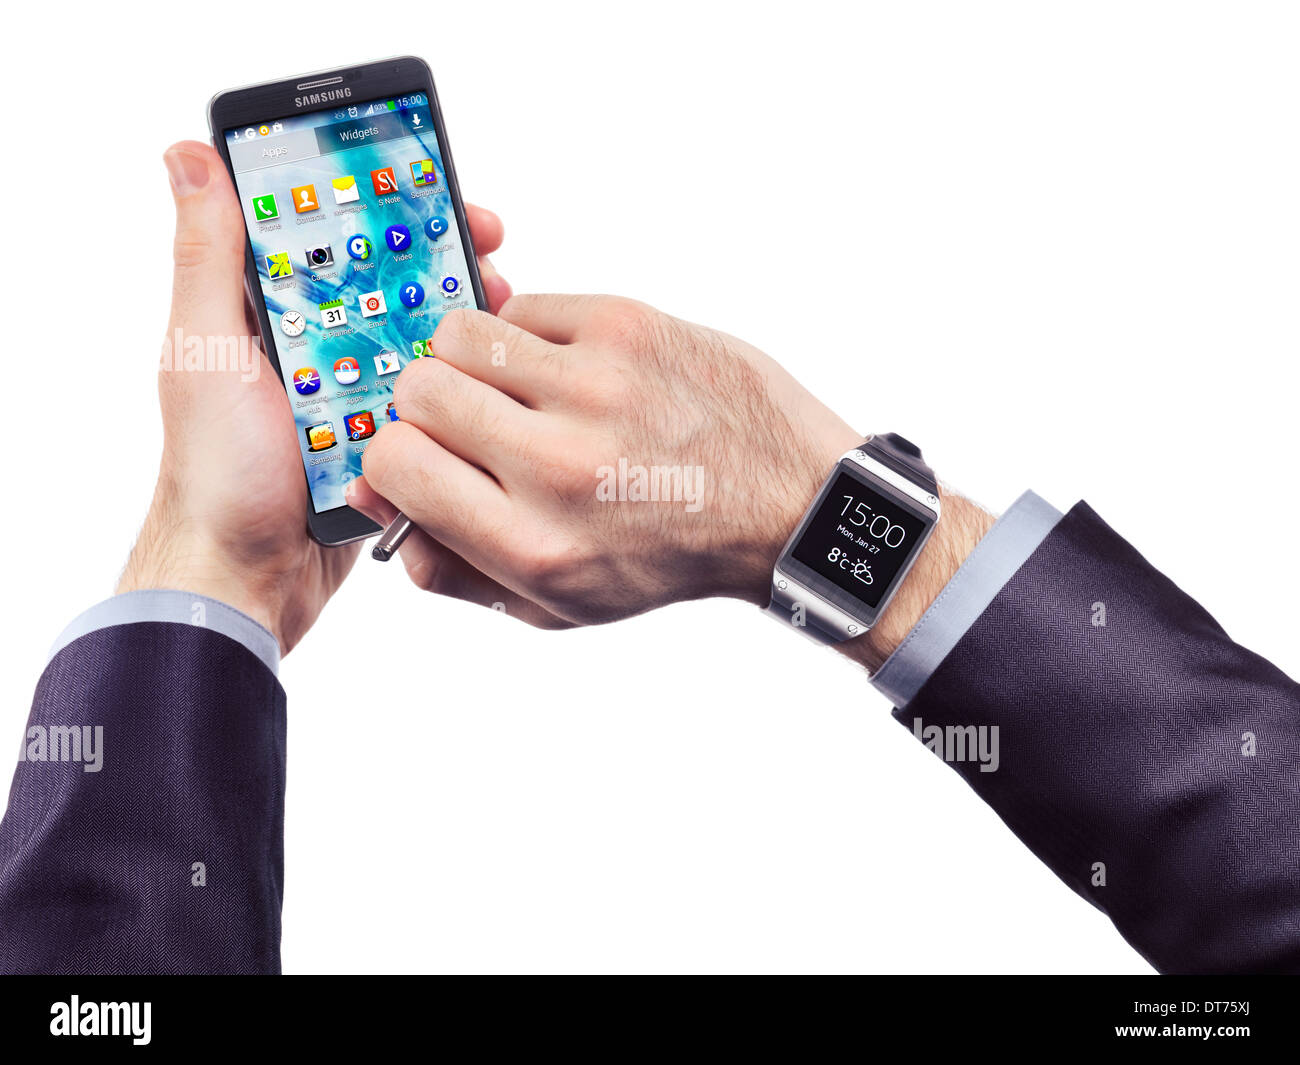 Mains d'une personne qui porte Samsung Galaxy Gear watch et holding smartphone Galaxy Note 3 isolé sur fond blanc Banque D'Images